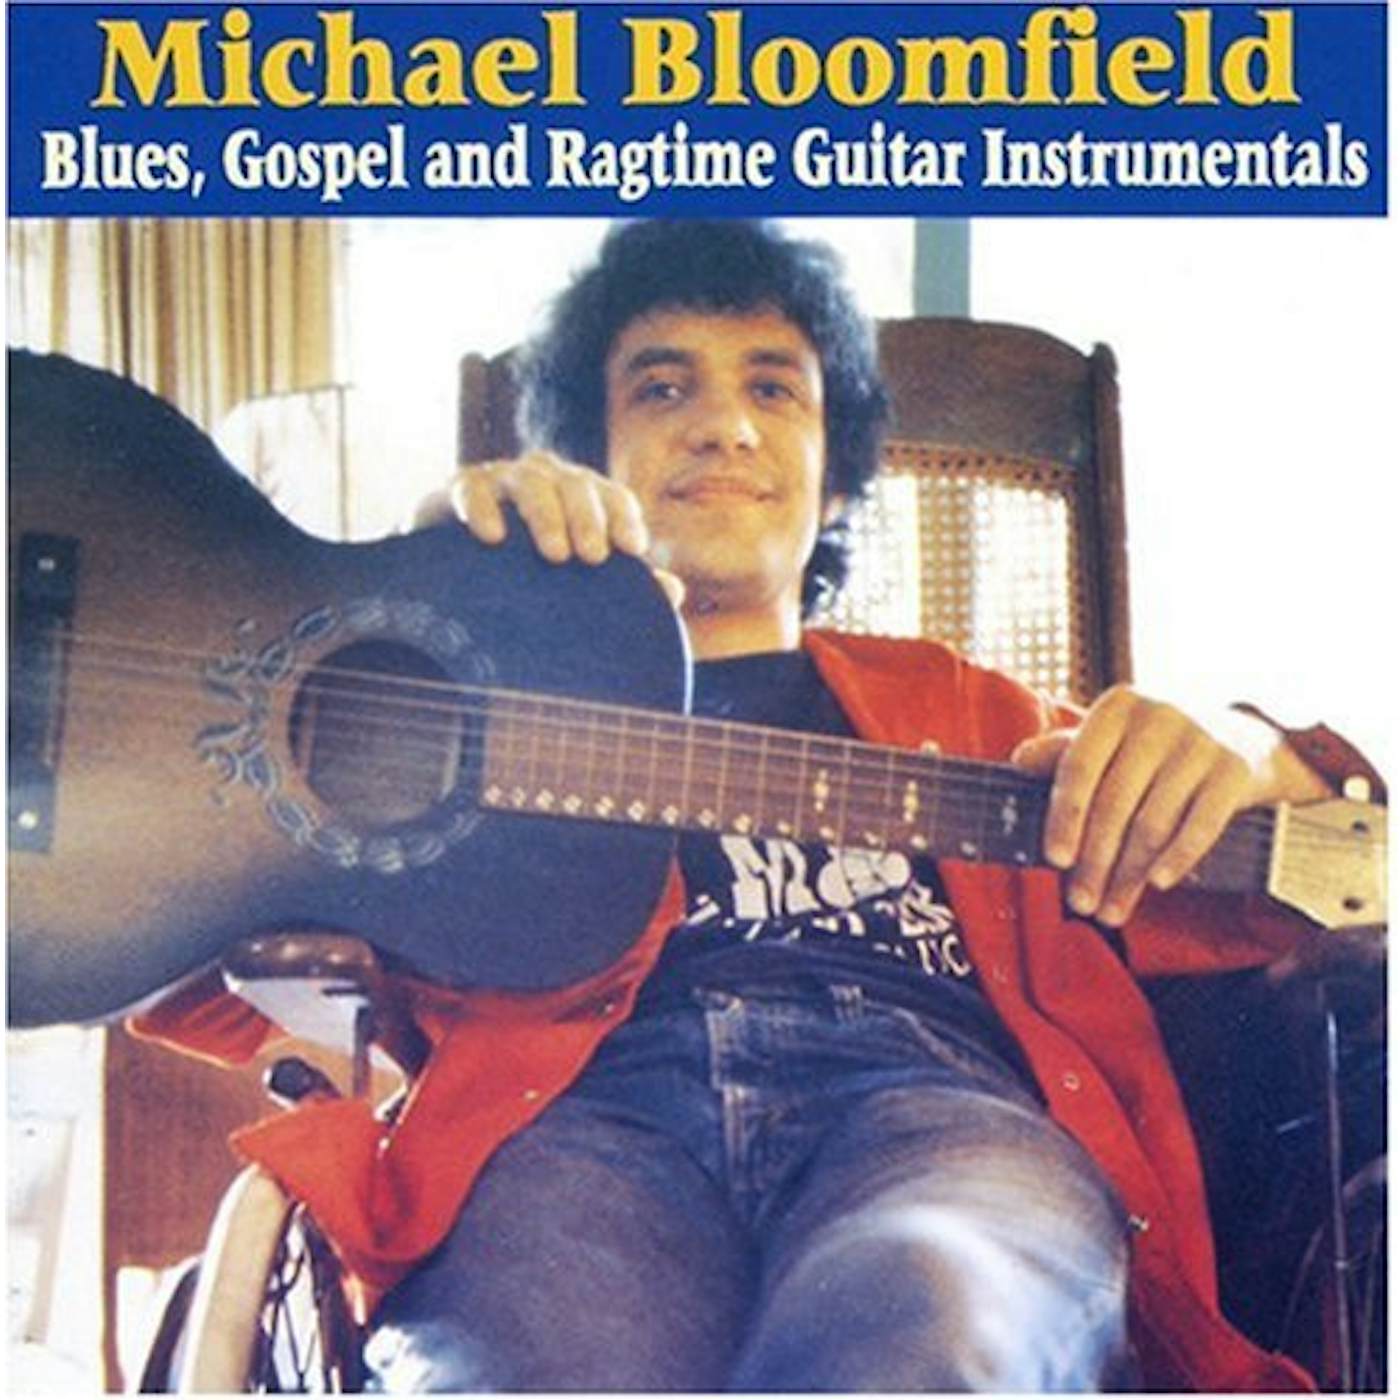 Mike Bloomfield BLUES GOSPEL & RAGTIME GUITAR INSTRUMENTALS CD